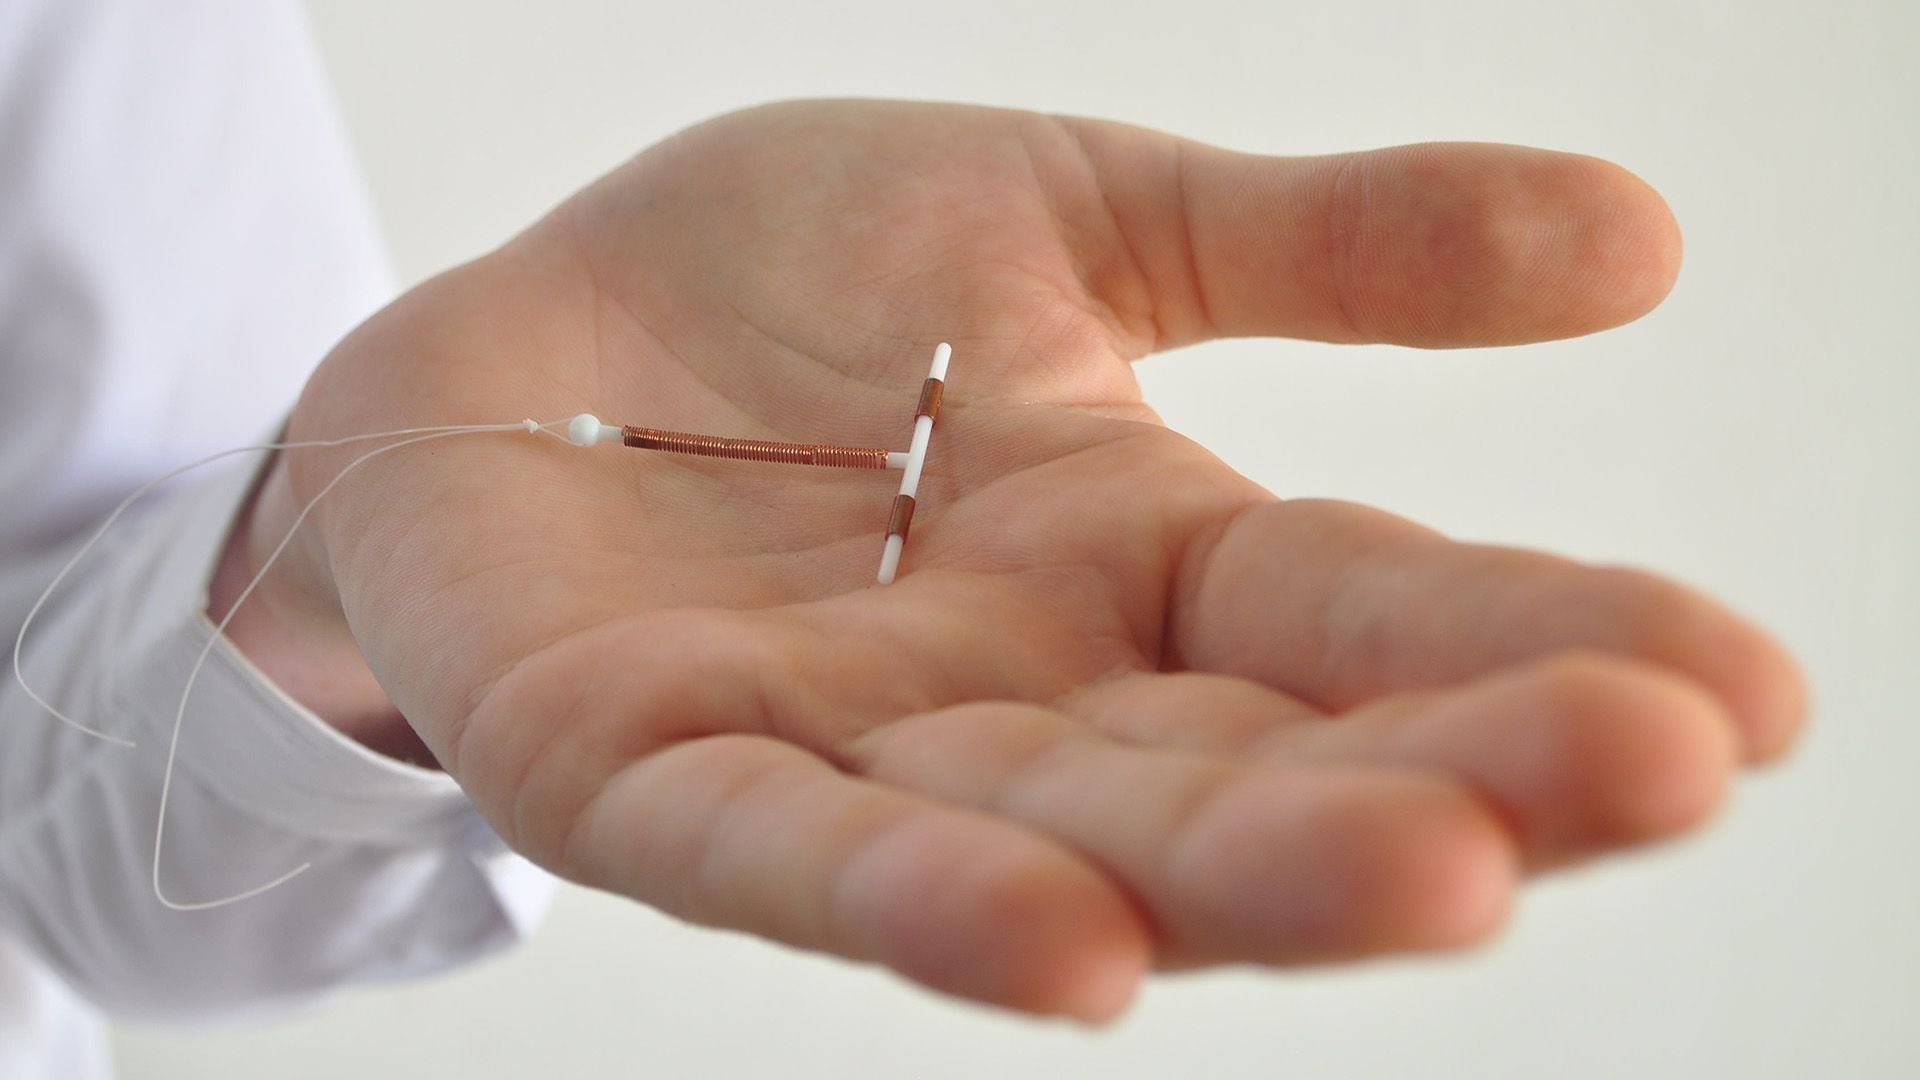 El dispositivo intrauterino (DIU) está recubierto de un hilo de cobre y es colocado por un profesional de la salud  (Getty)